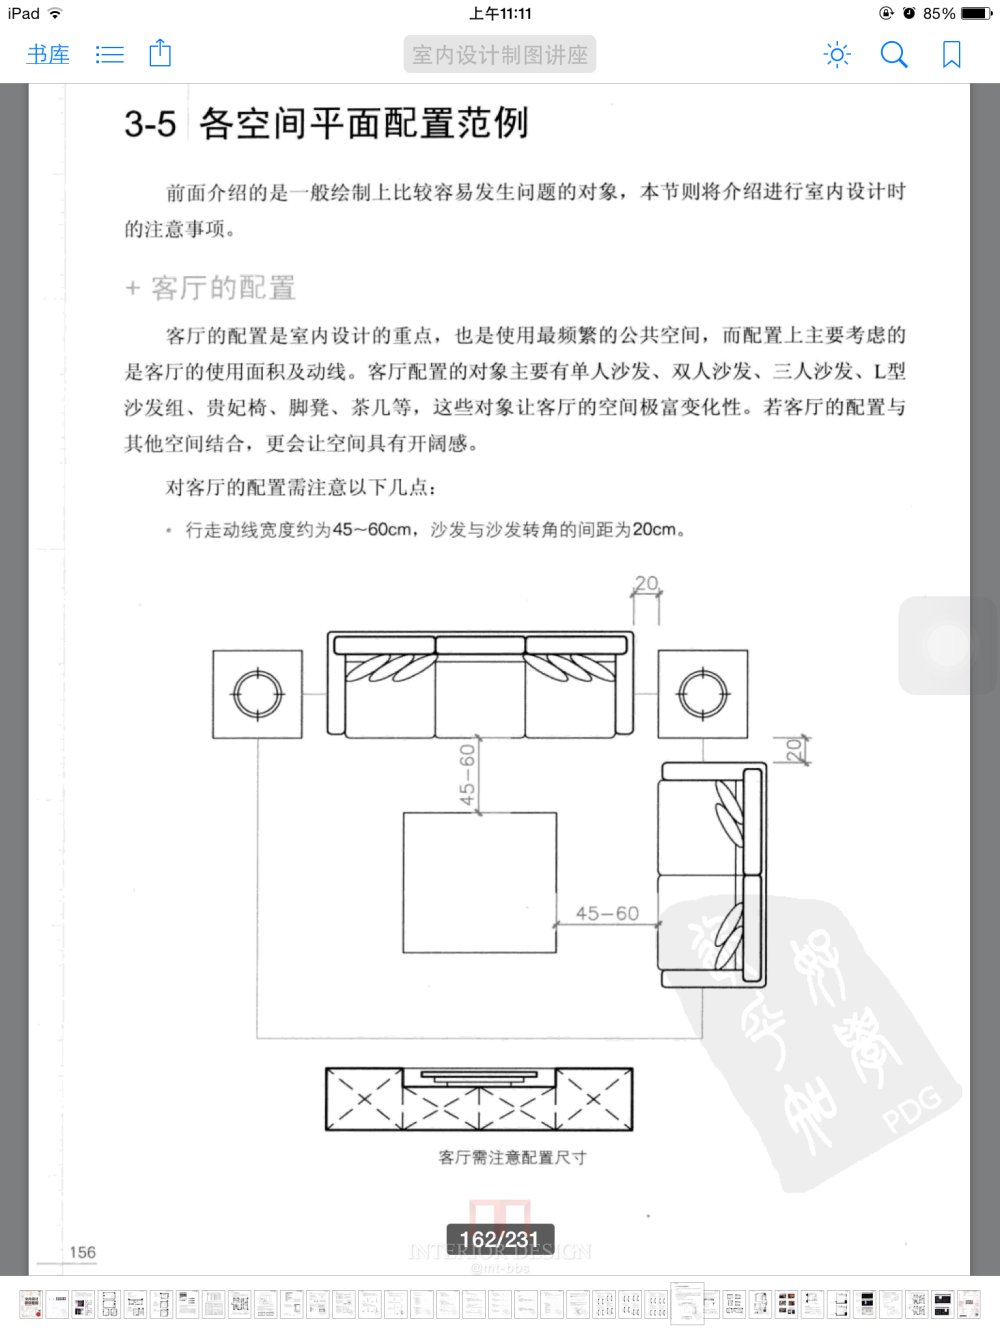 室内装饰材料应用与施工的书什么的PDF版_img_0147.png